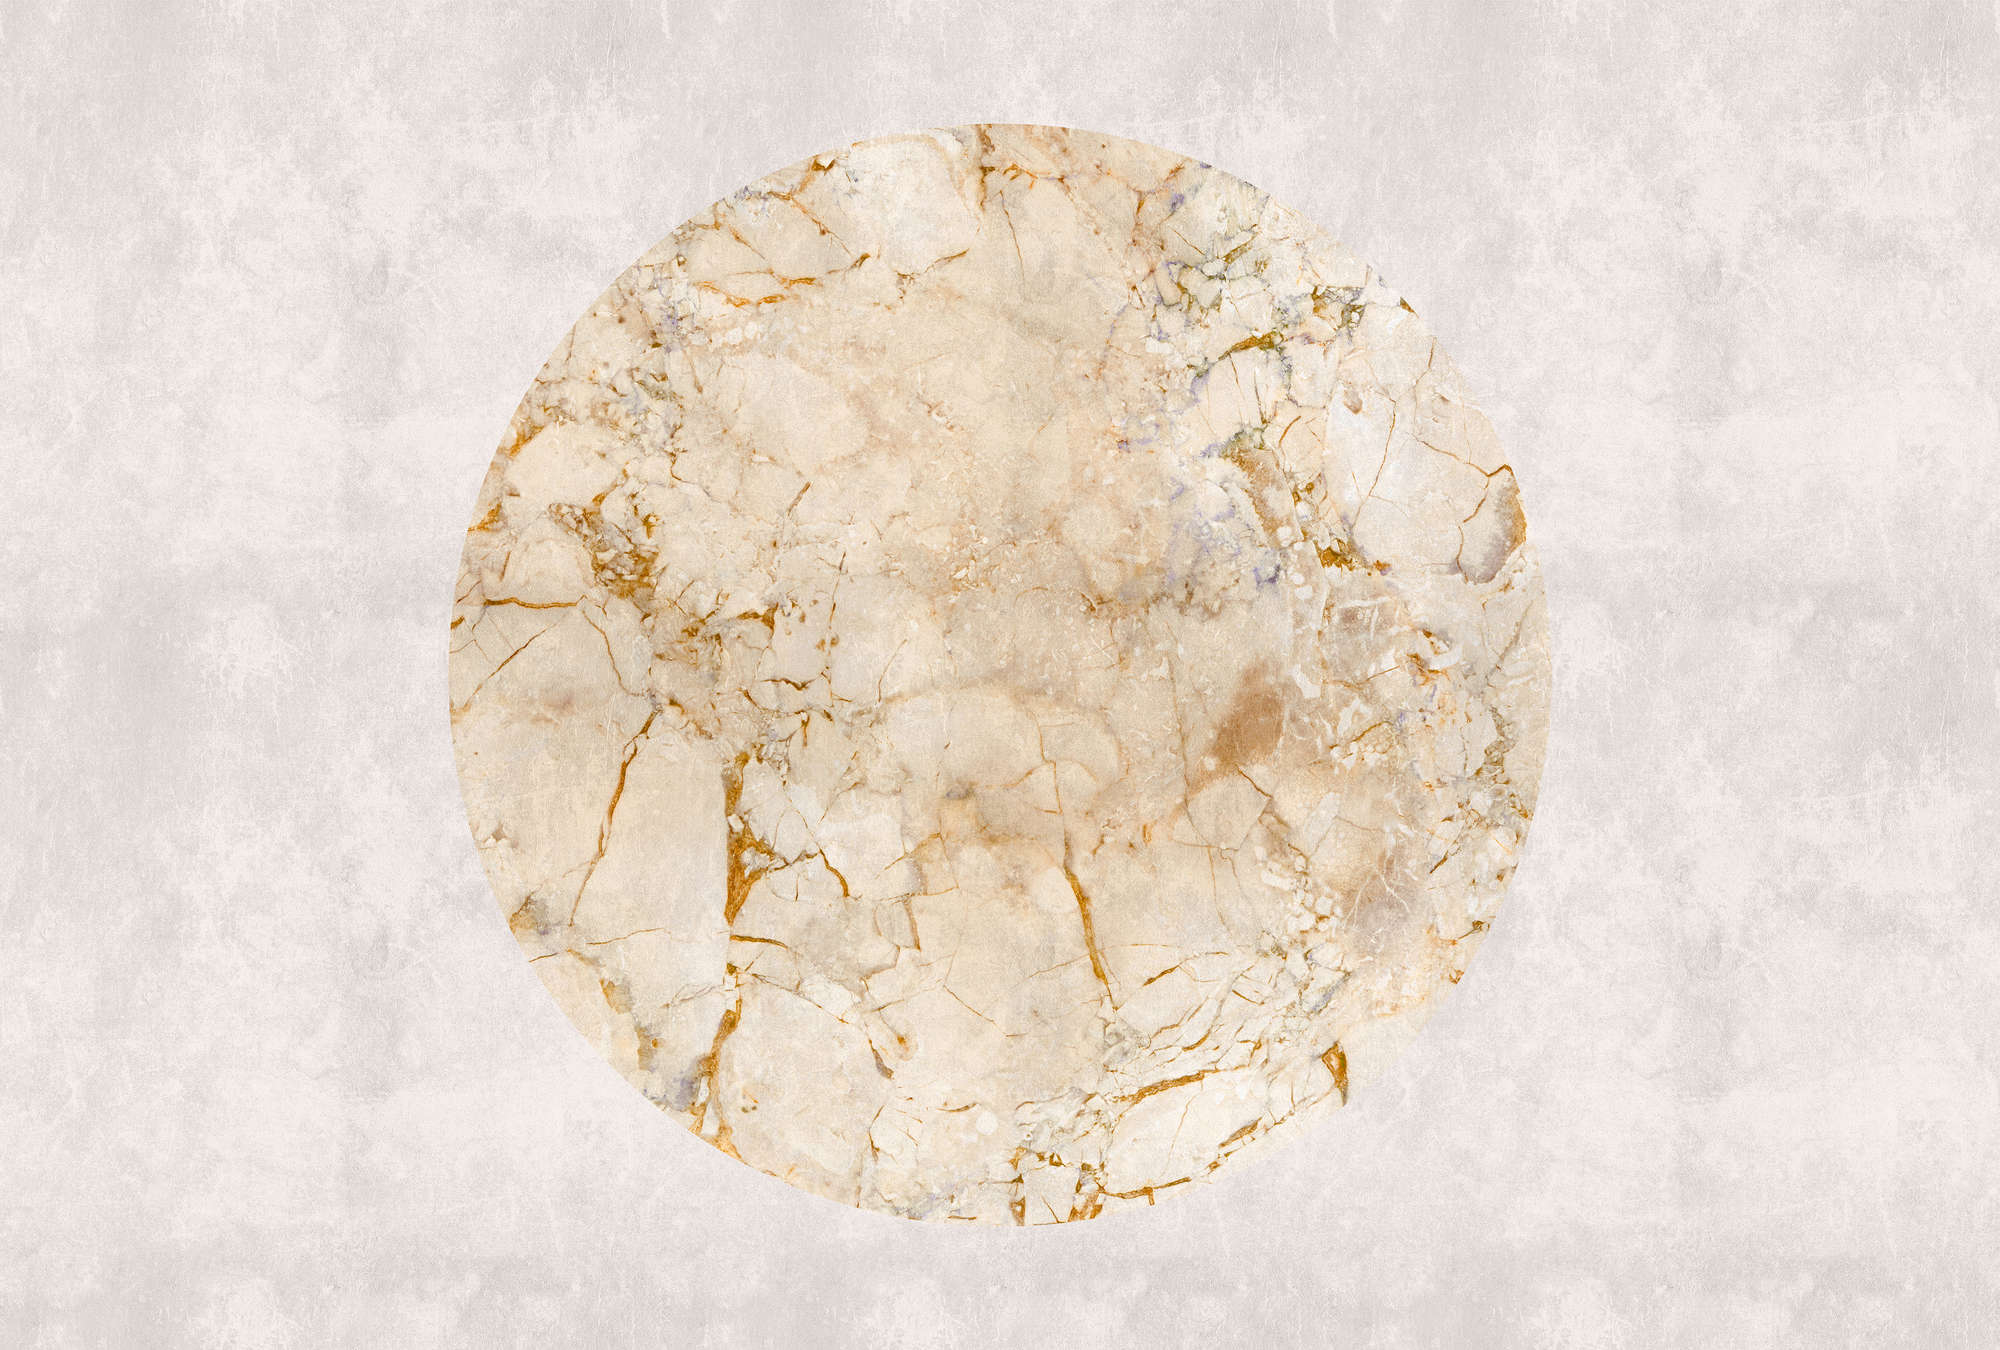             Venus 2 - Marmer Behang Goud Patroon & Steen Look
        